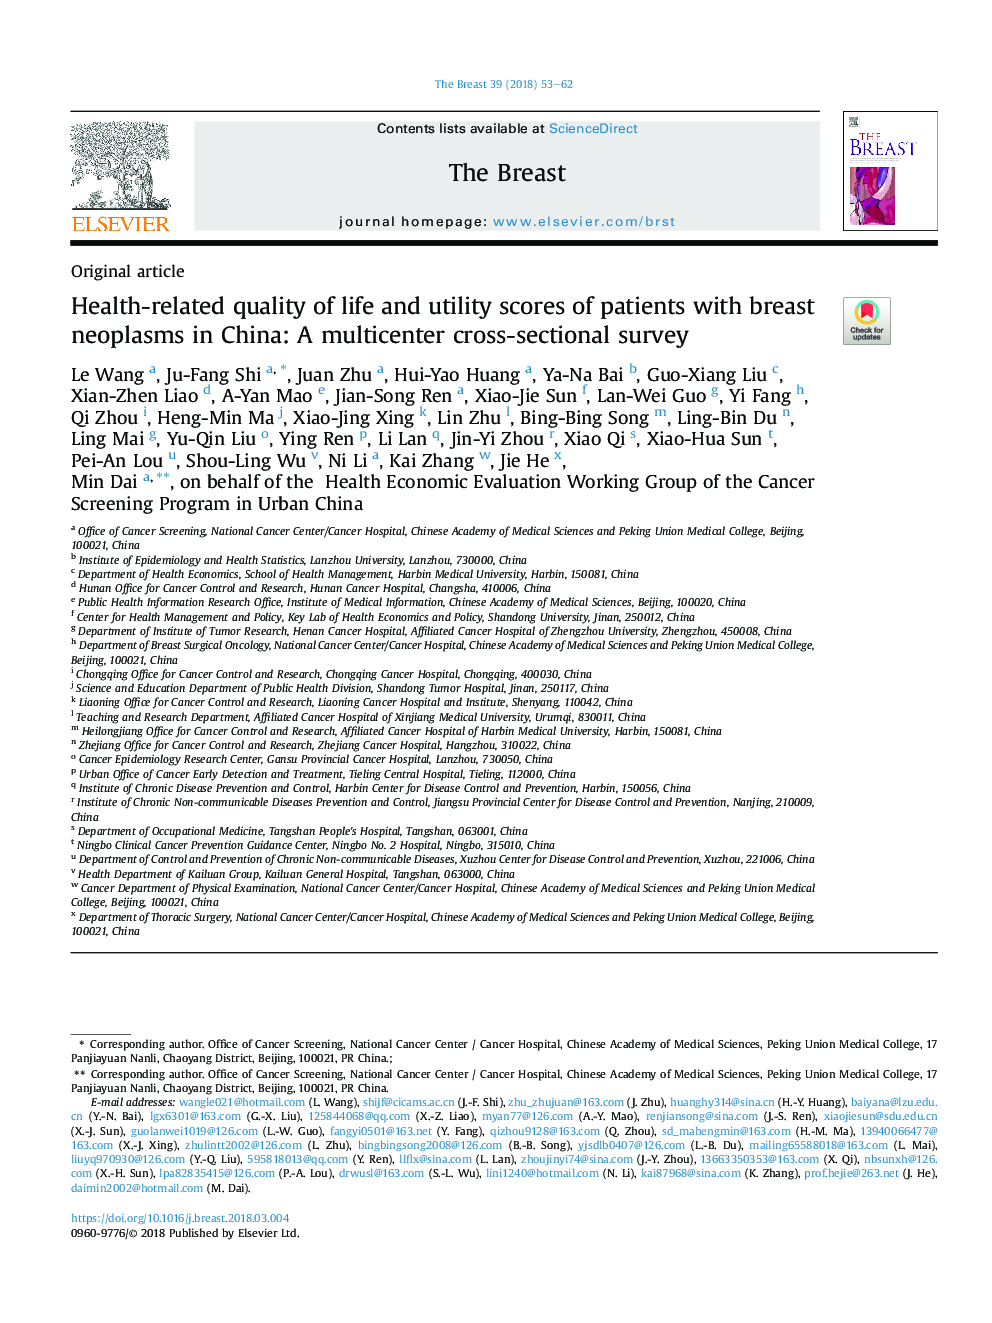 کیفیت زندگی مرتبط با سلامت و نمرههای سودمند بیماران مبتلا به نئوپلاسمهای سینه در چین: یک مطالعه مقطعی چند مرکزی 